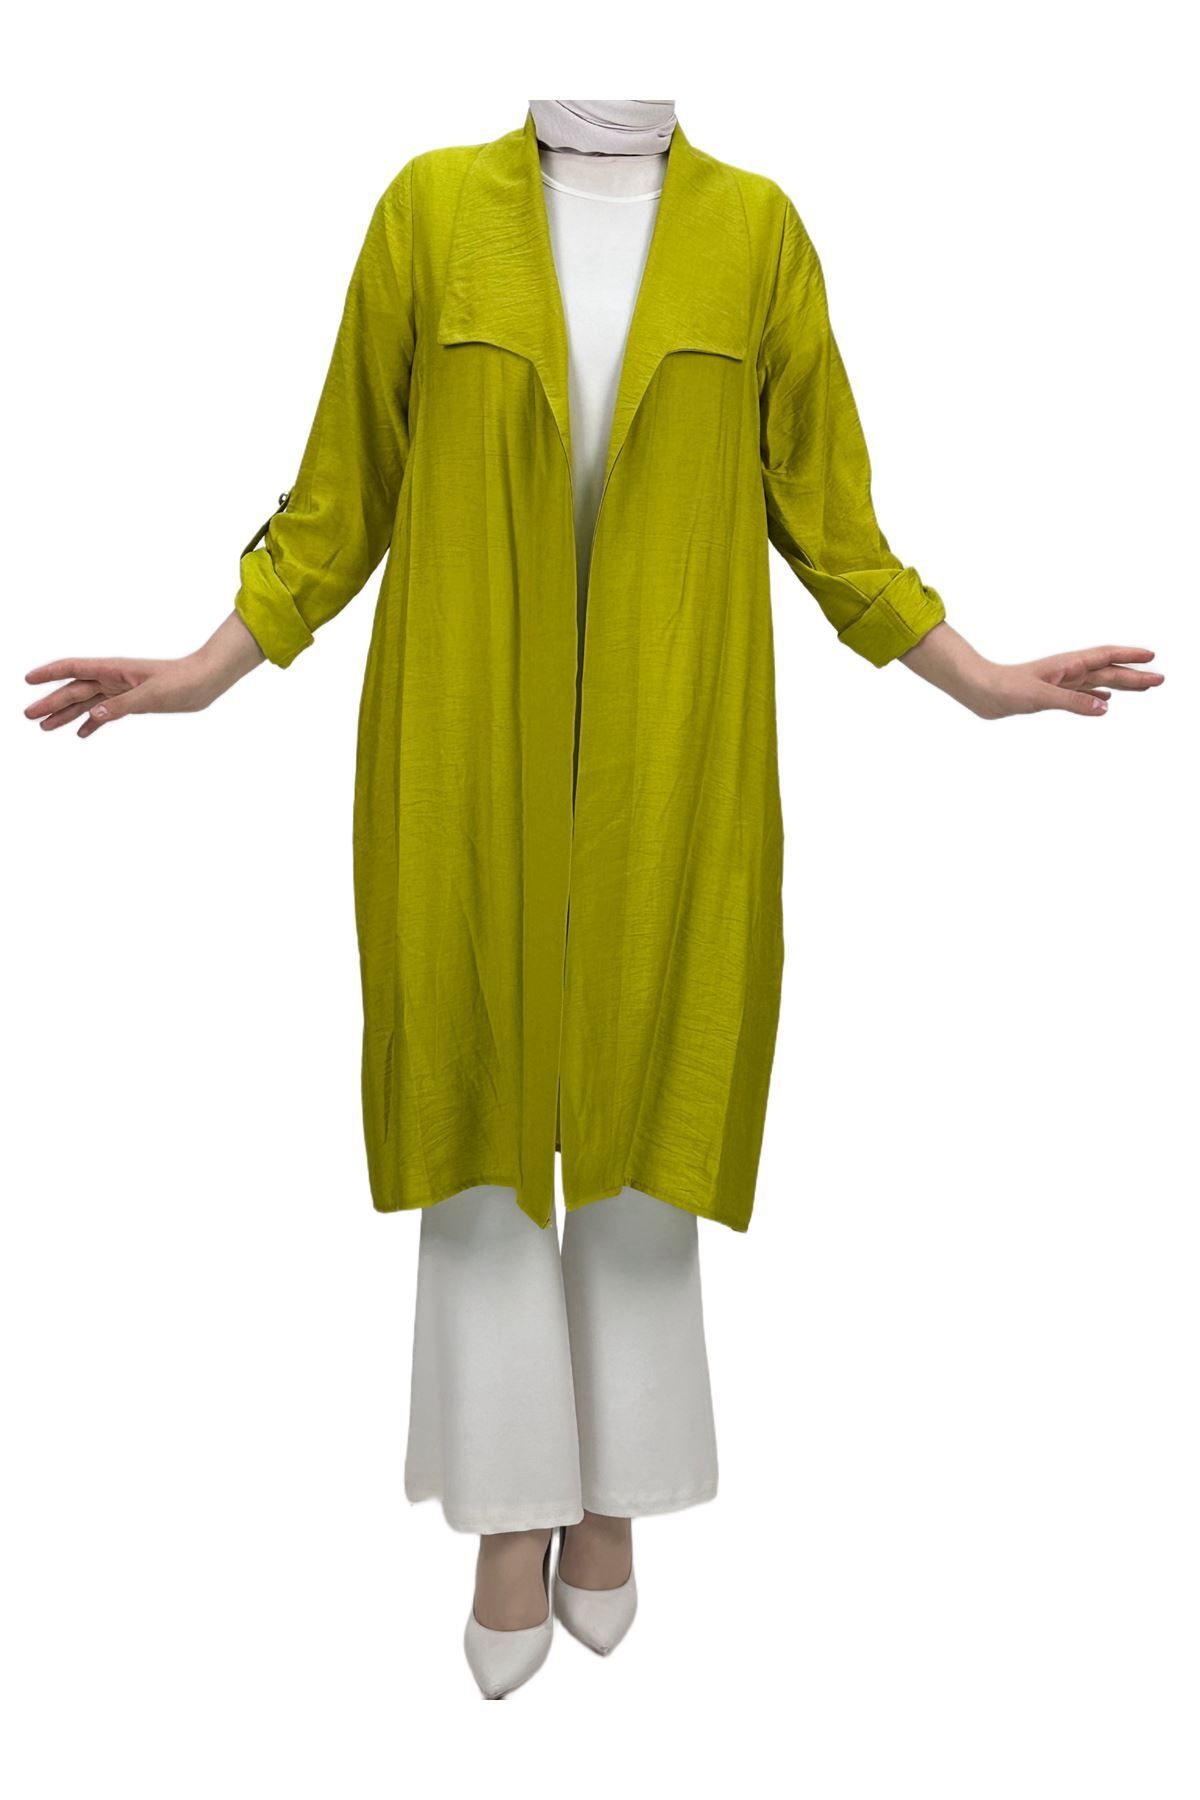 ottoman wear OTW48347 Ceket ve Bluz İkili Takım Yağ Yeşili